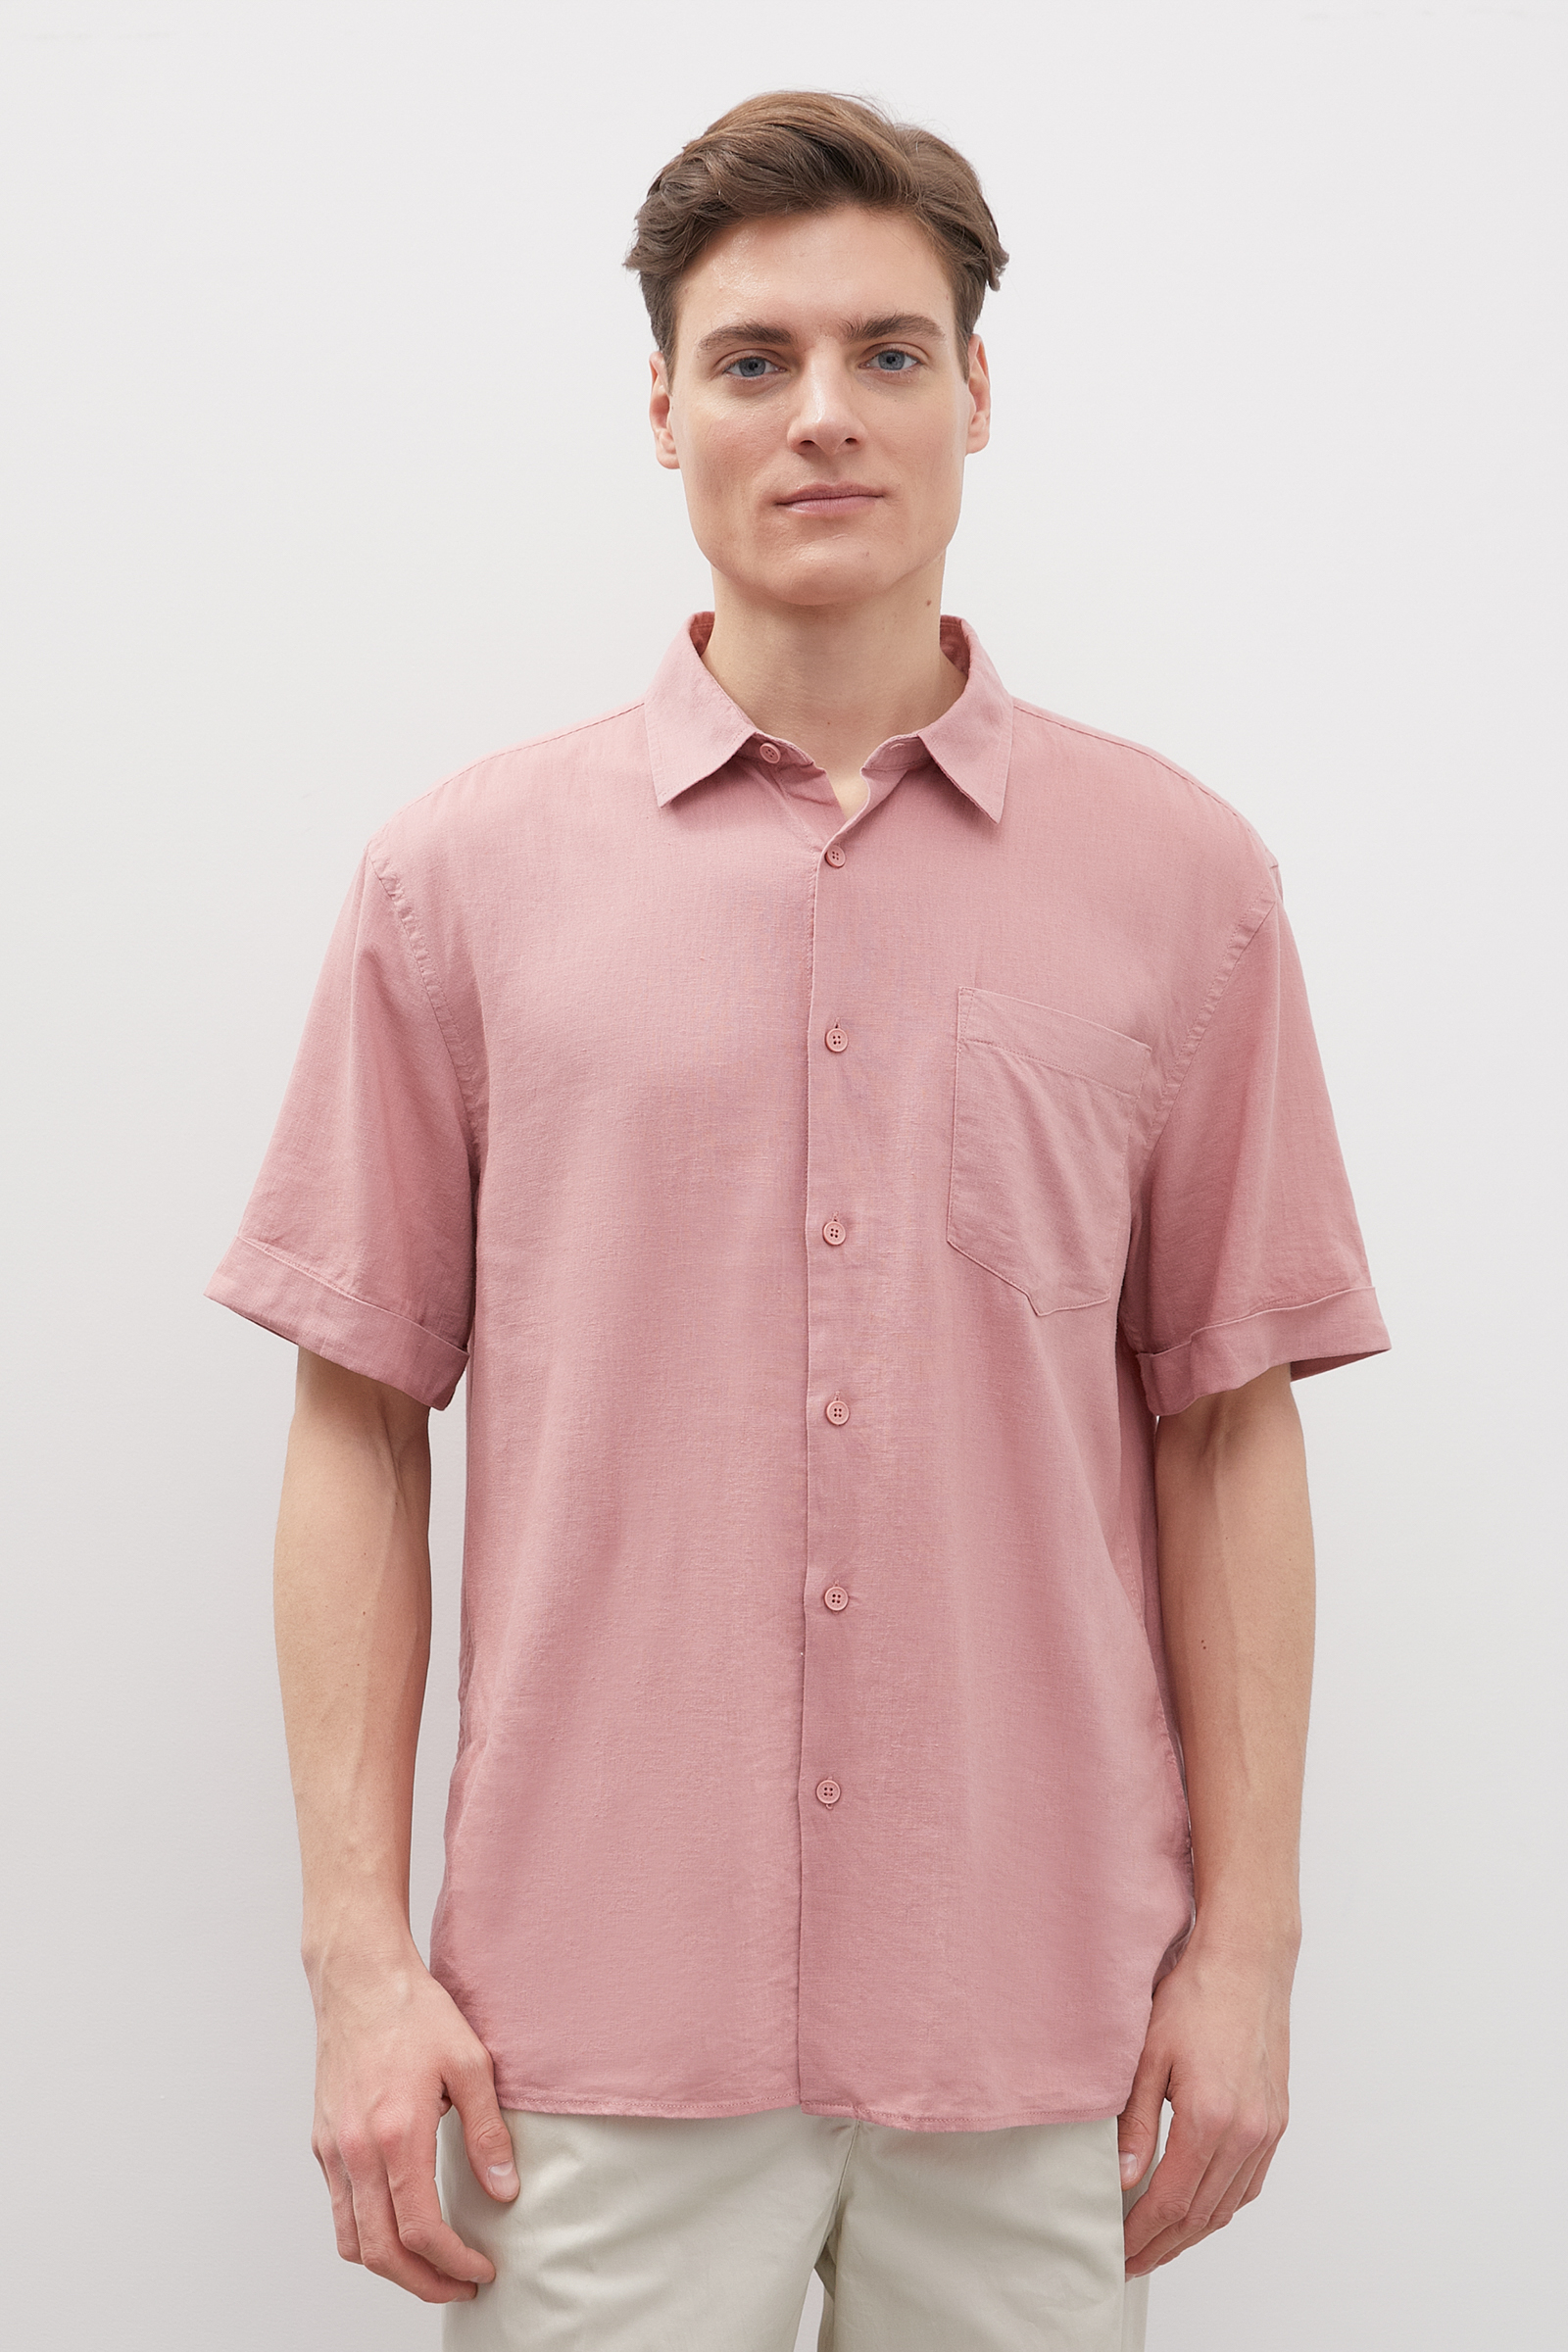 Рубашка мужская Finn Flare FSD21004 розовая 2XL